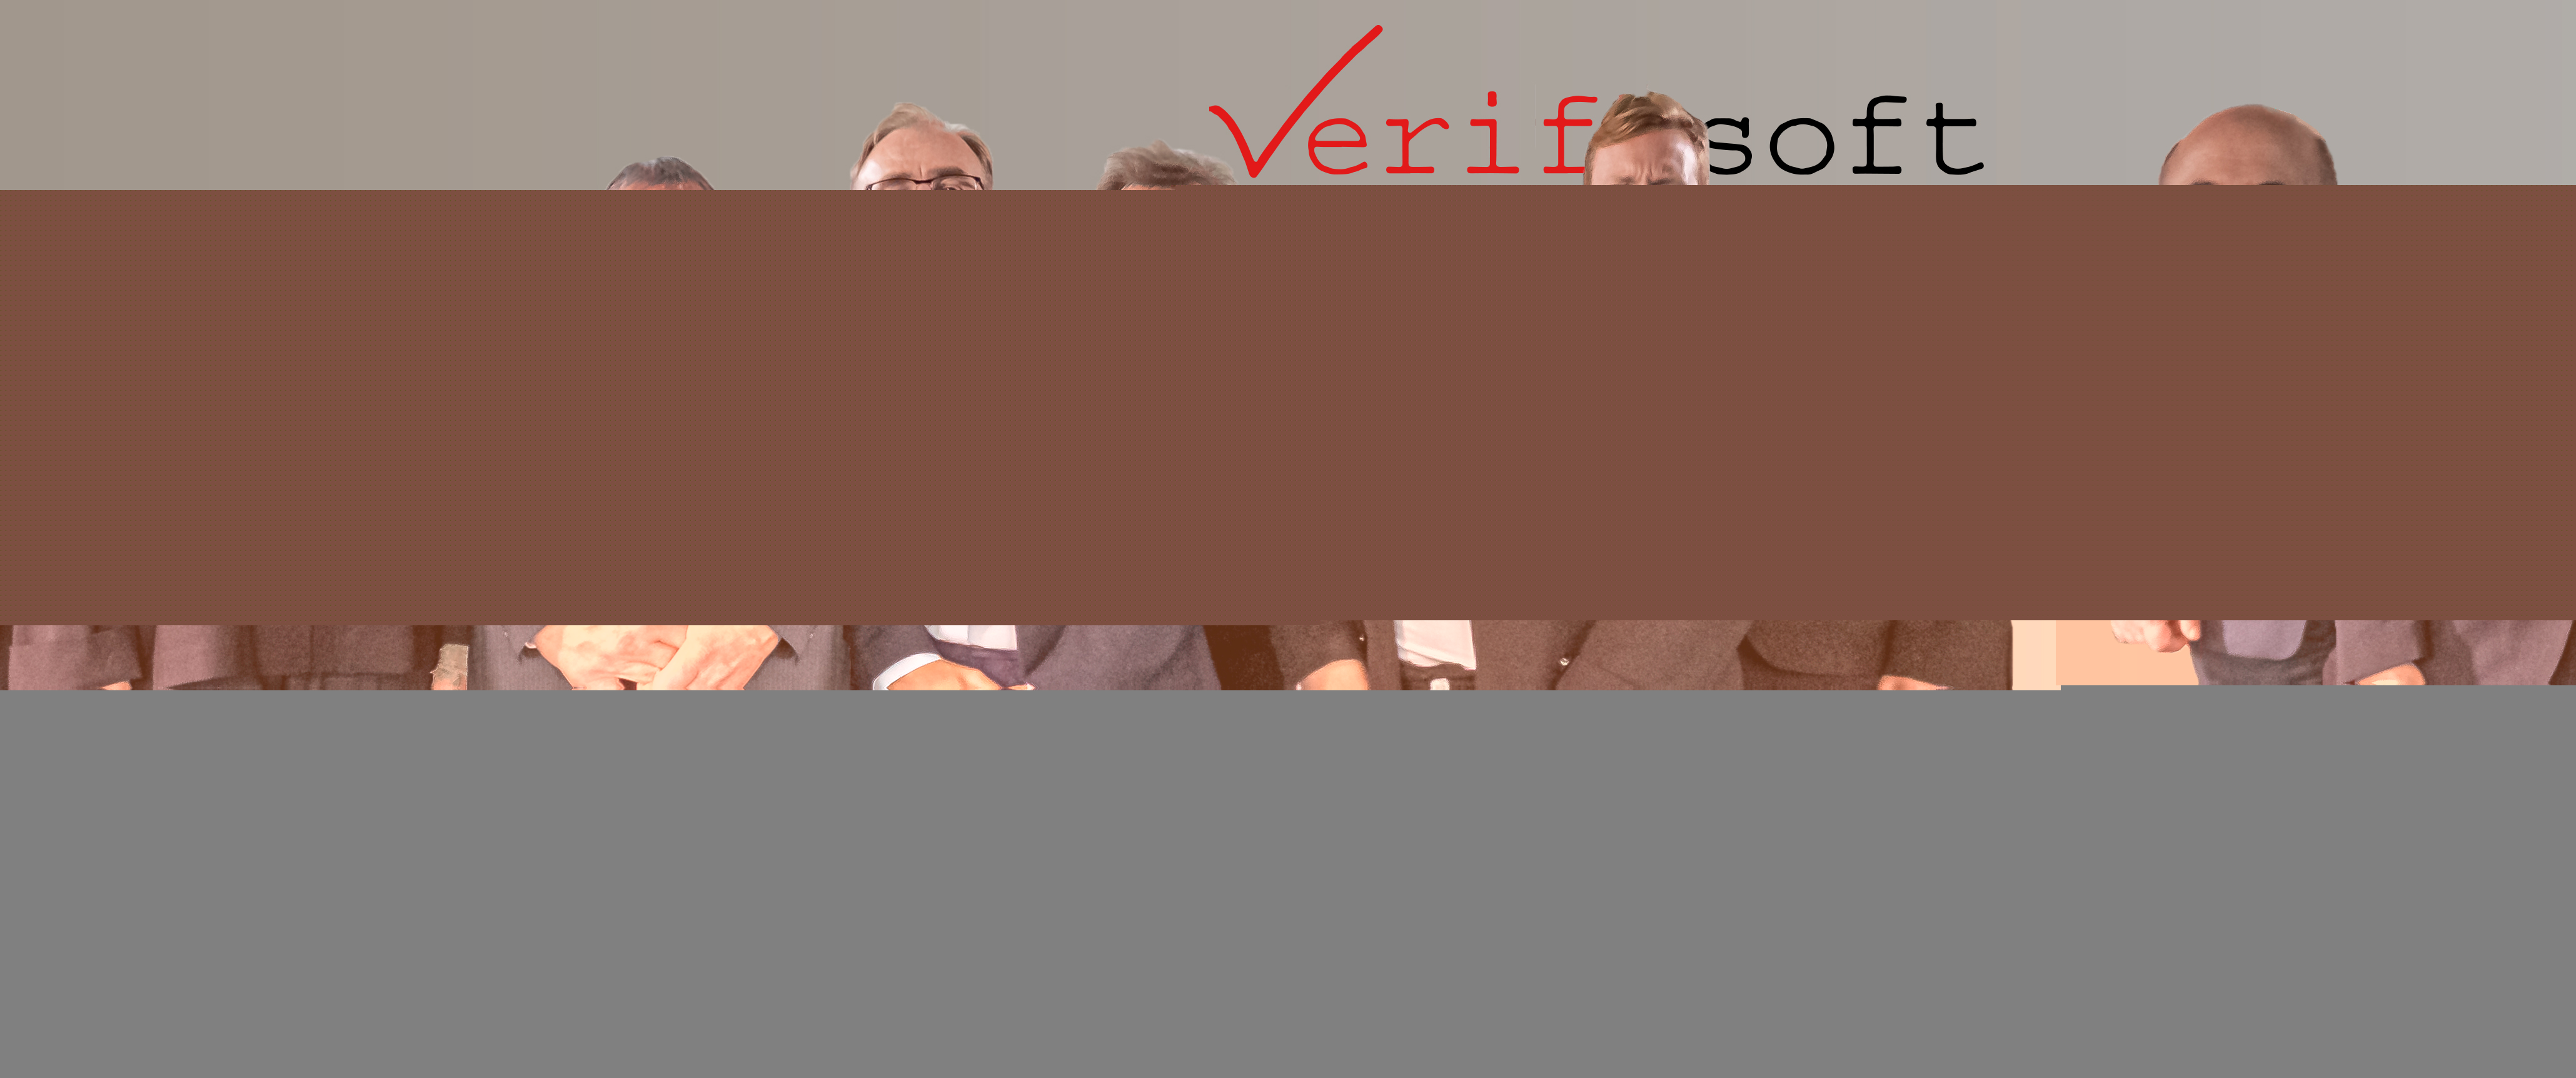 Verifysoft Team